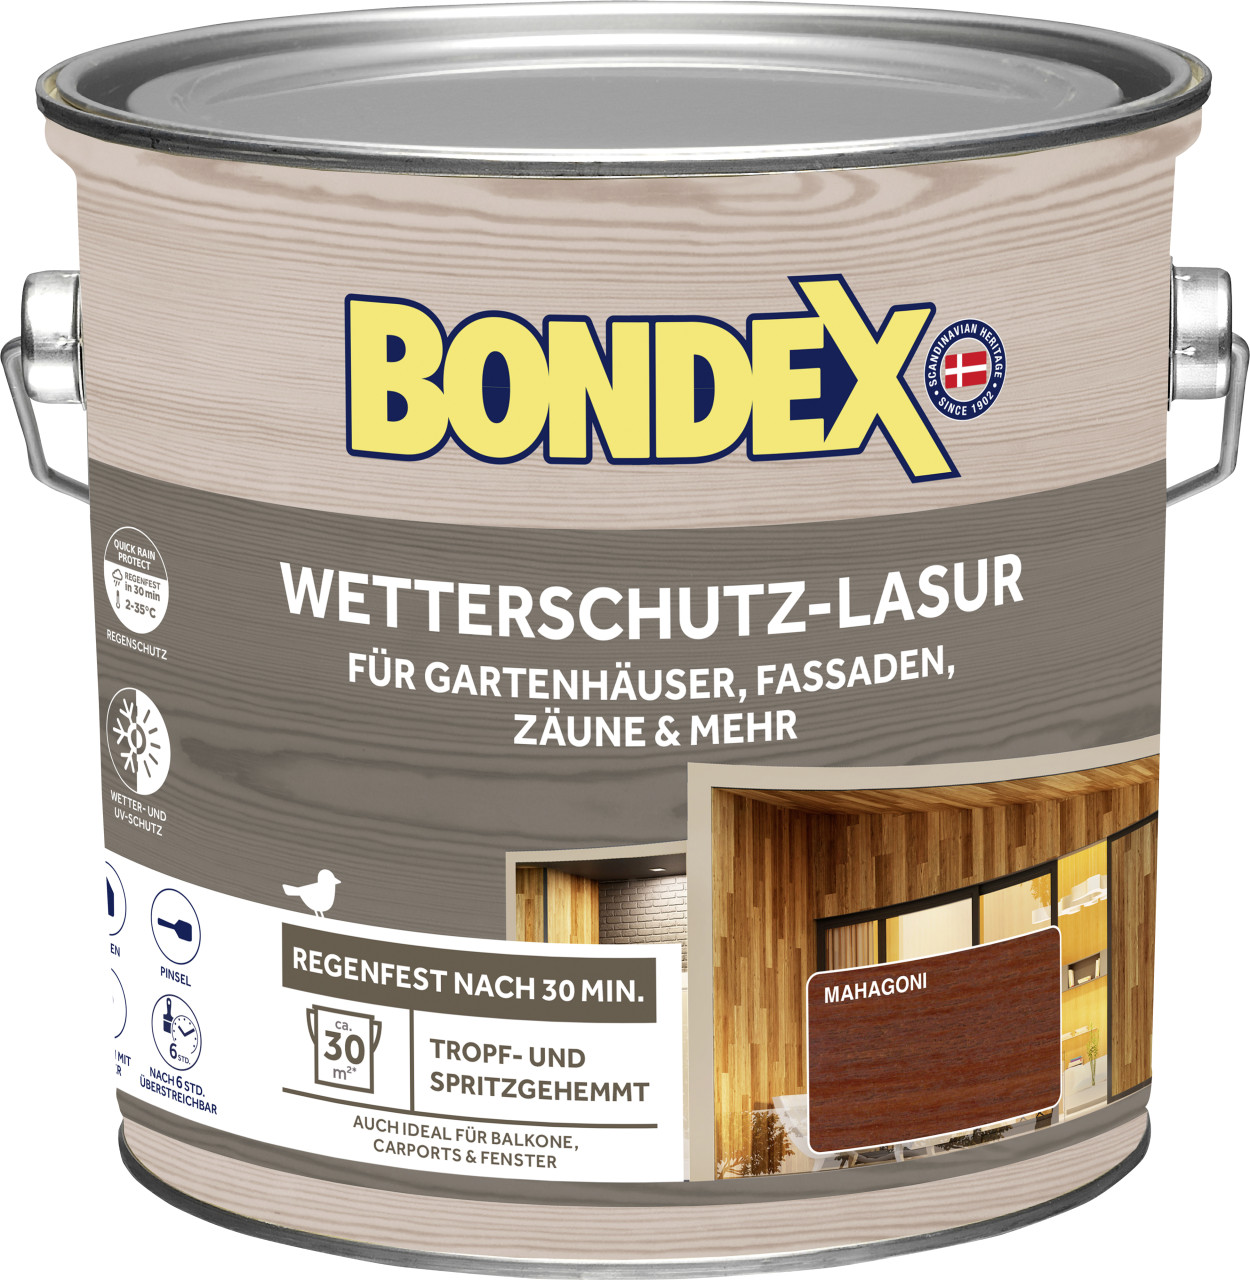 Bondex Wetterschutzlasur 2,5 L mahagoni von Weitere